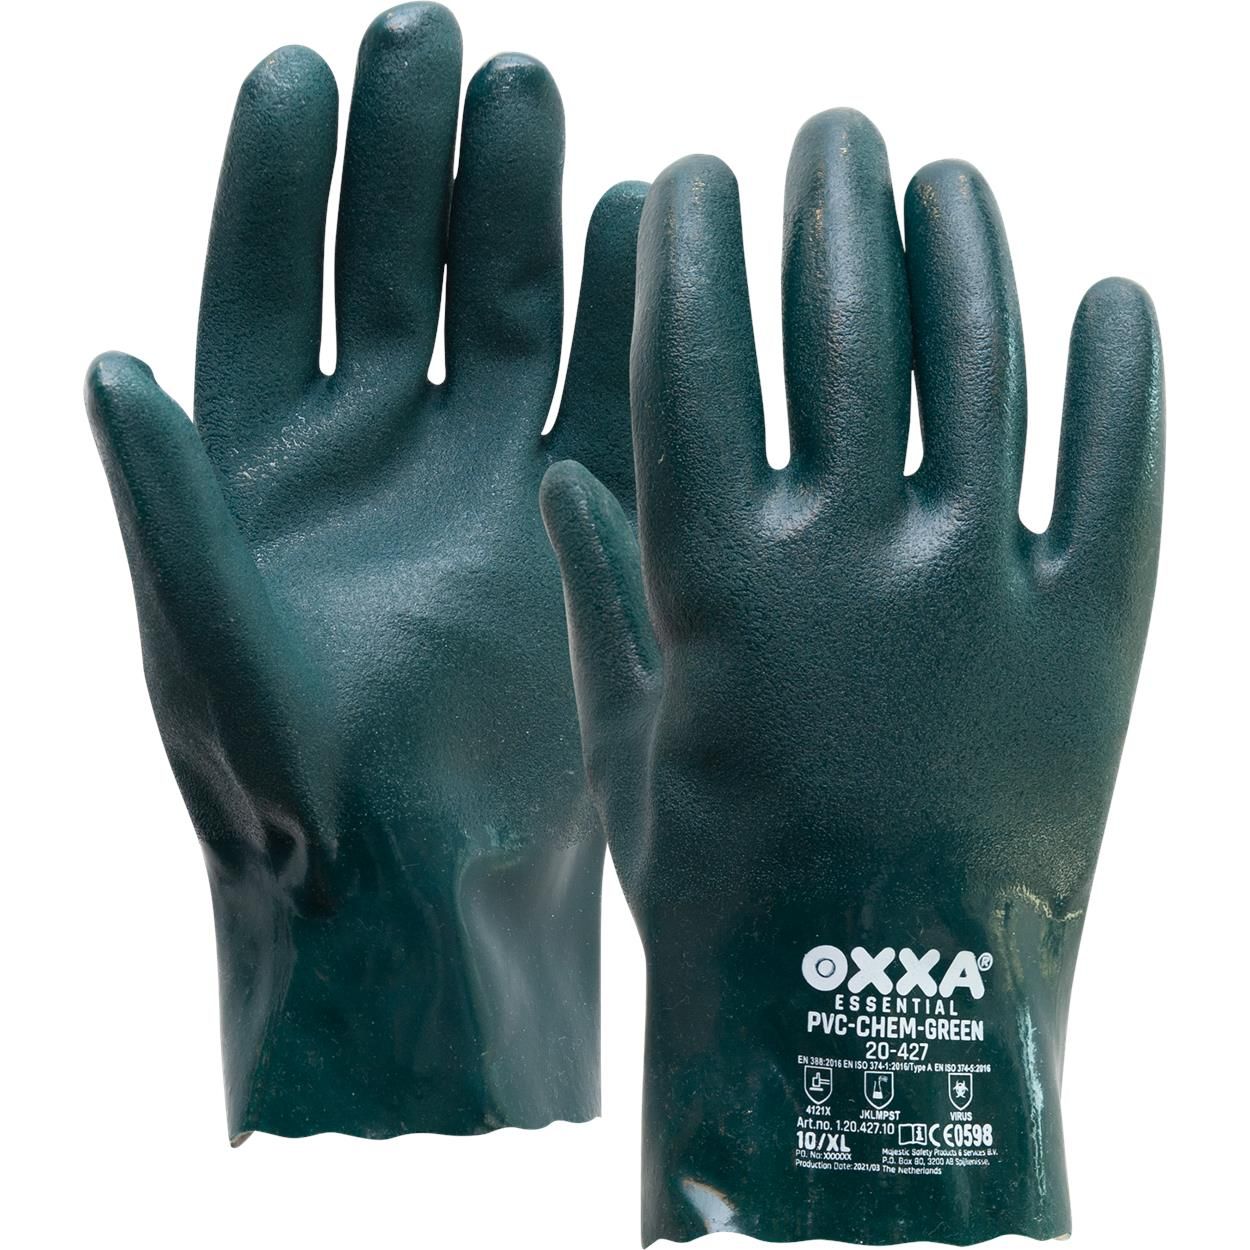 OXXA PVC-Chem-Green 20-427 werkhandschoenen